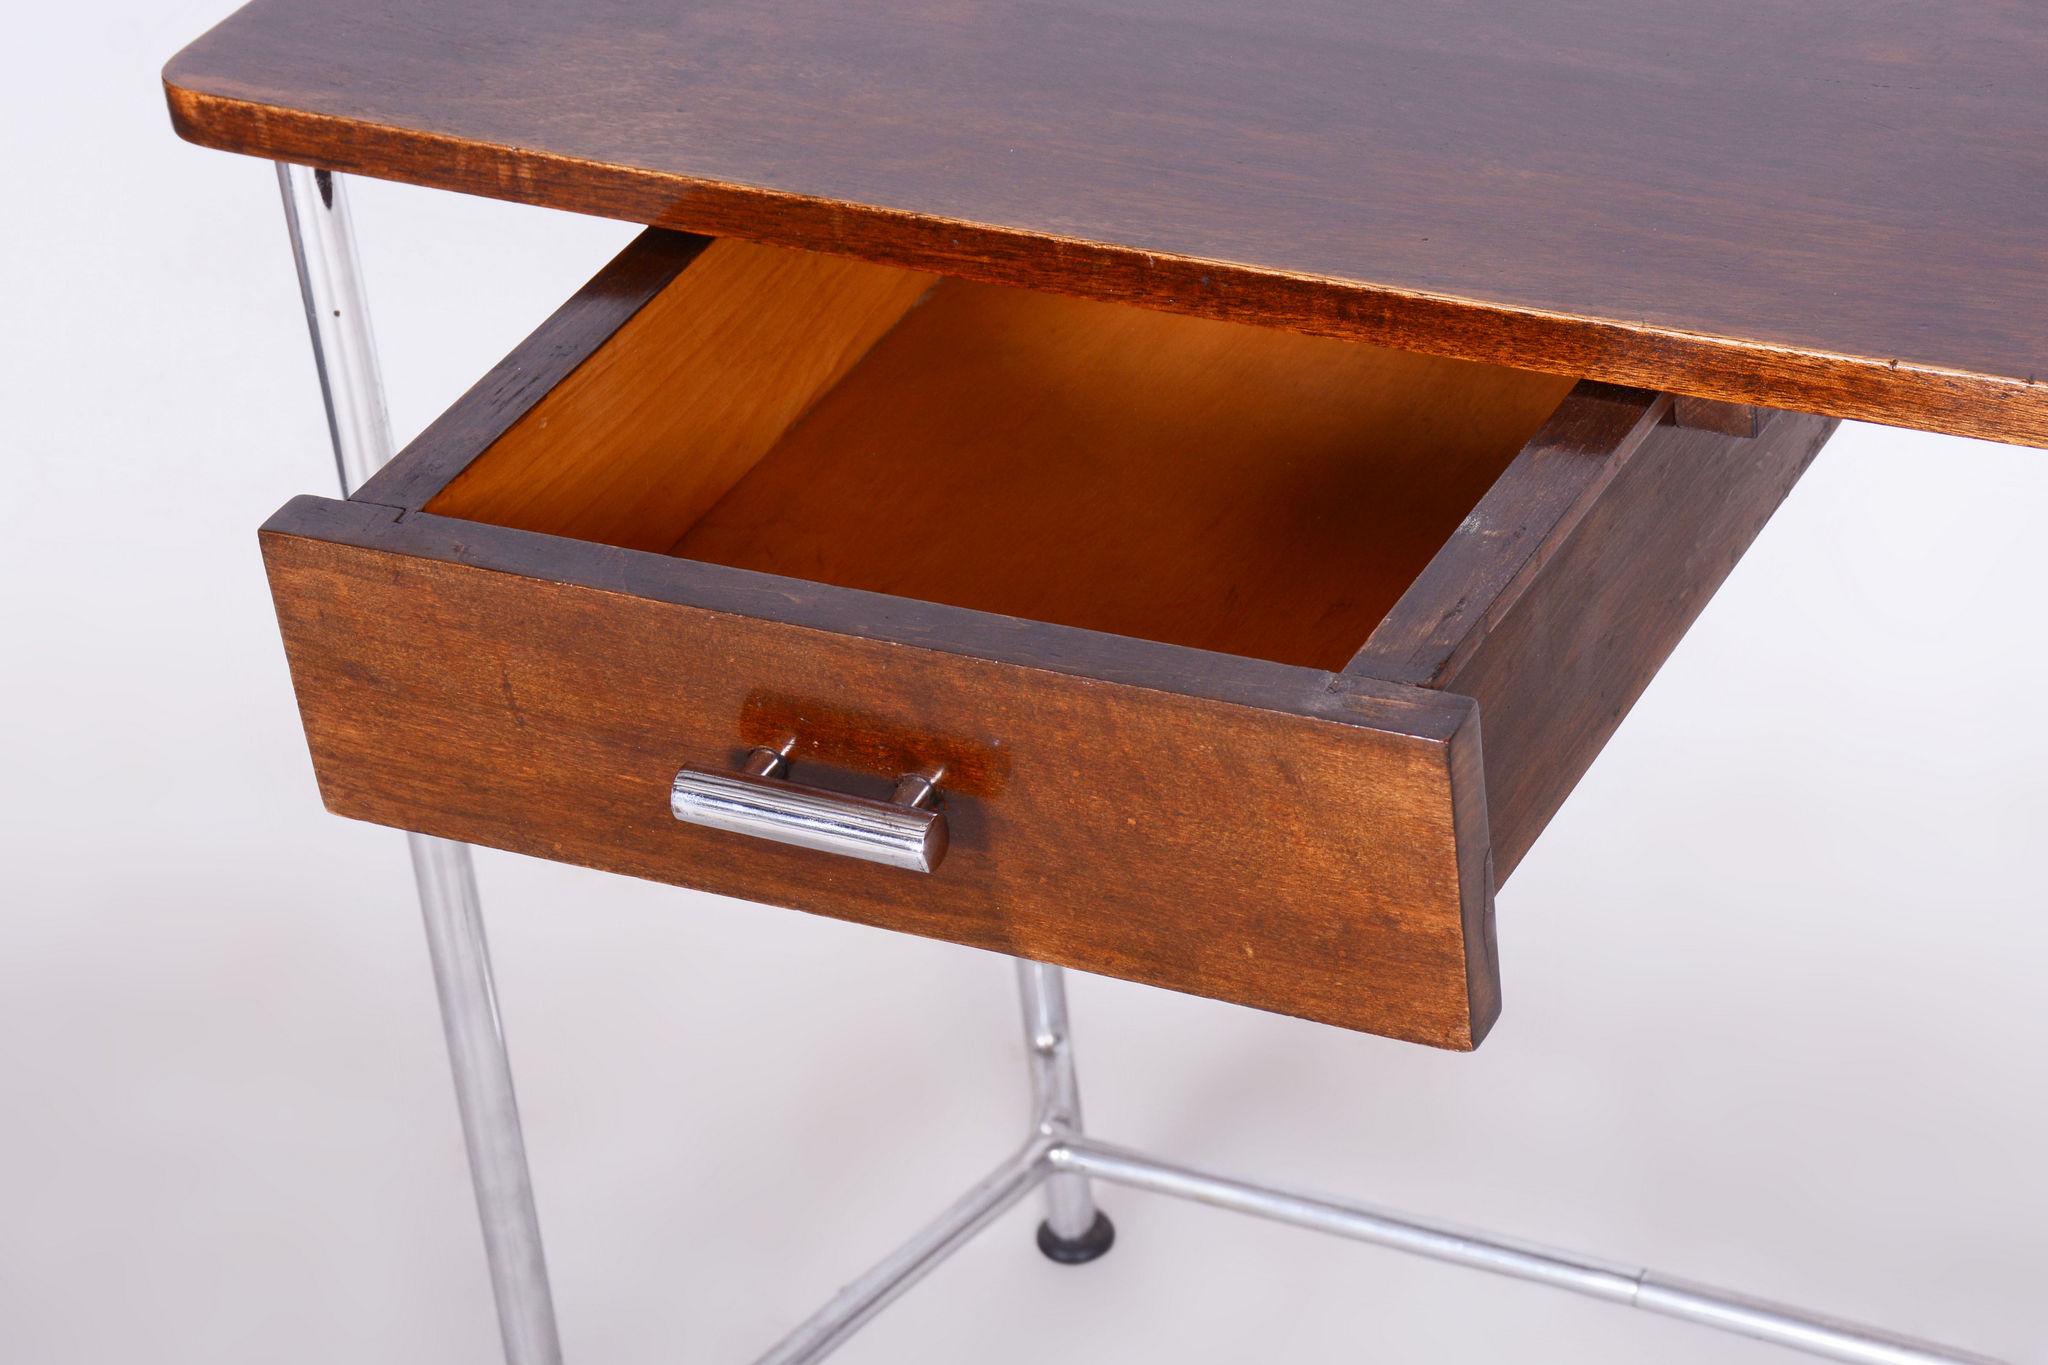 Restored Bauhaus Small Oak Writing Desk, Mücke Melder, Chrome, Czechia, 1930s For Sale 3